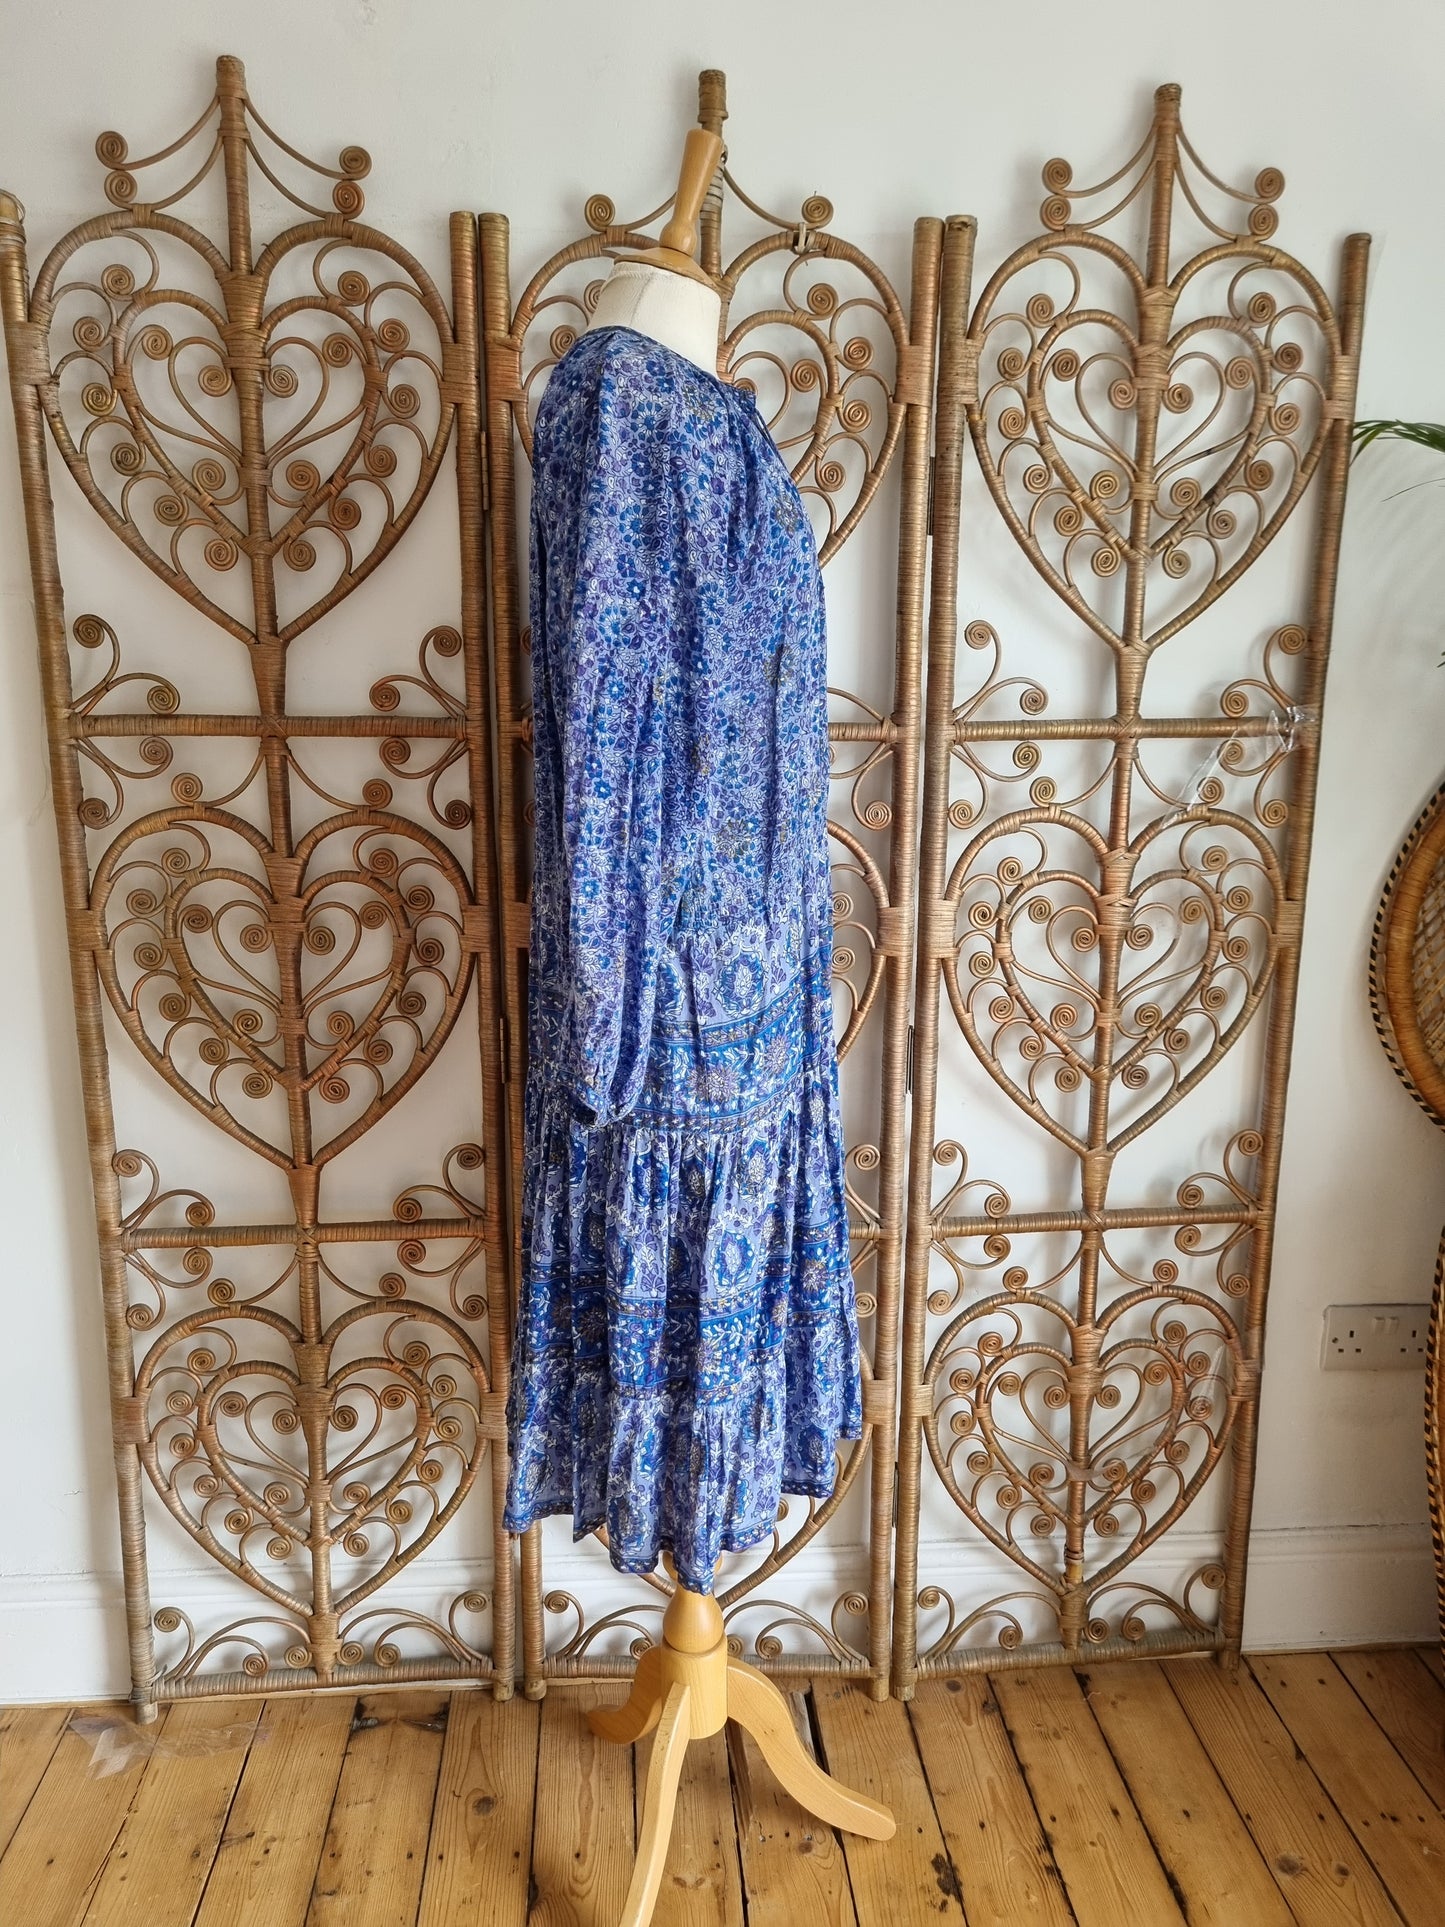 Vintage Indian cotton dress